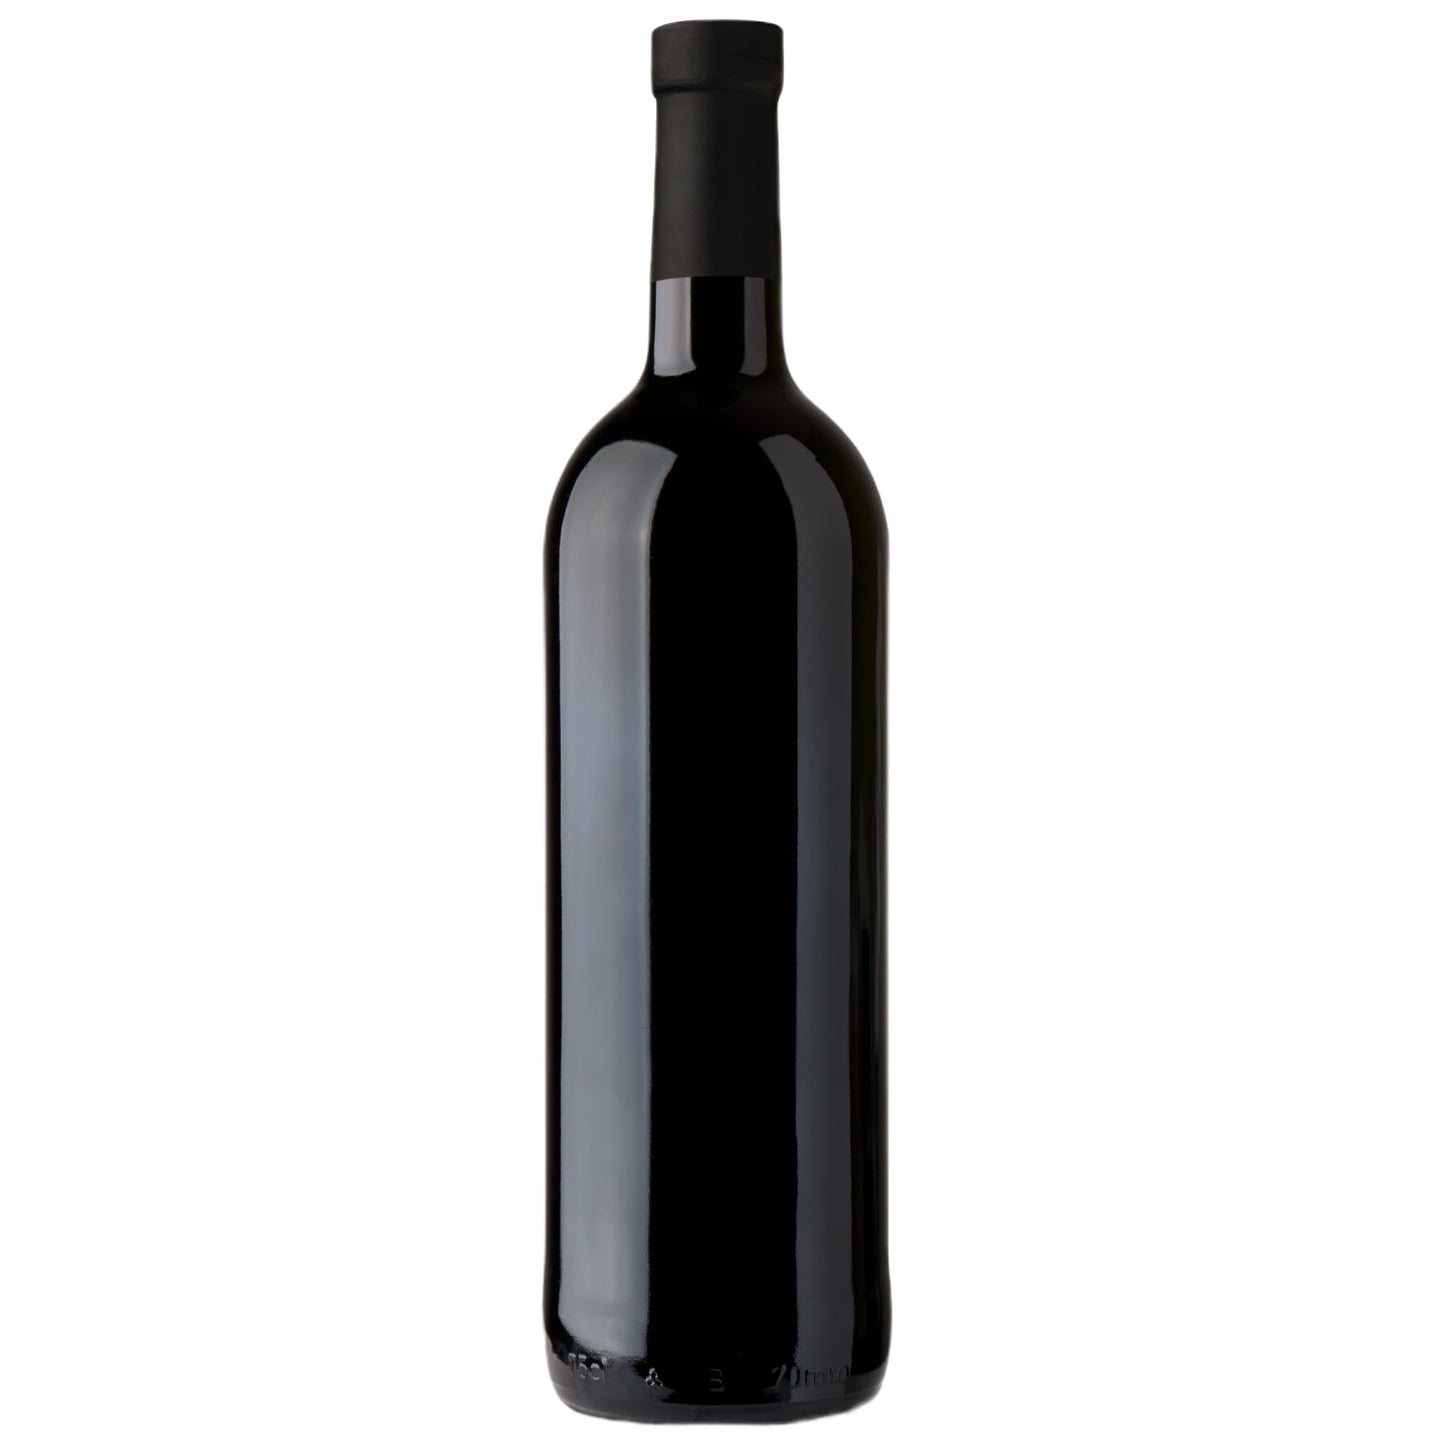 Domaine Nicole Lamarche: Bourgogne, Pinot Noir 2020